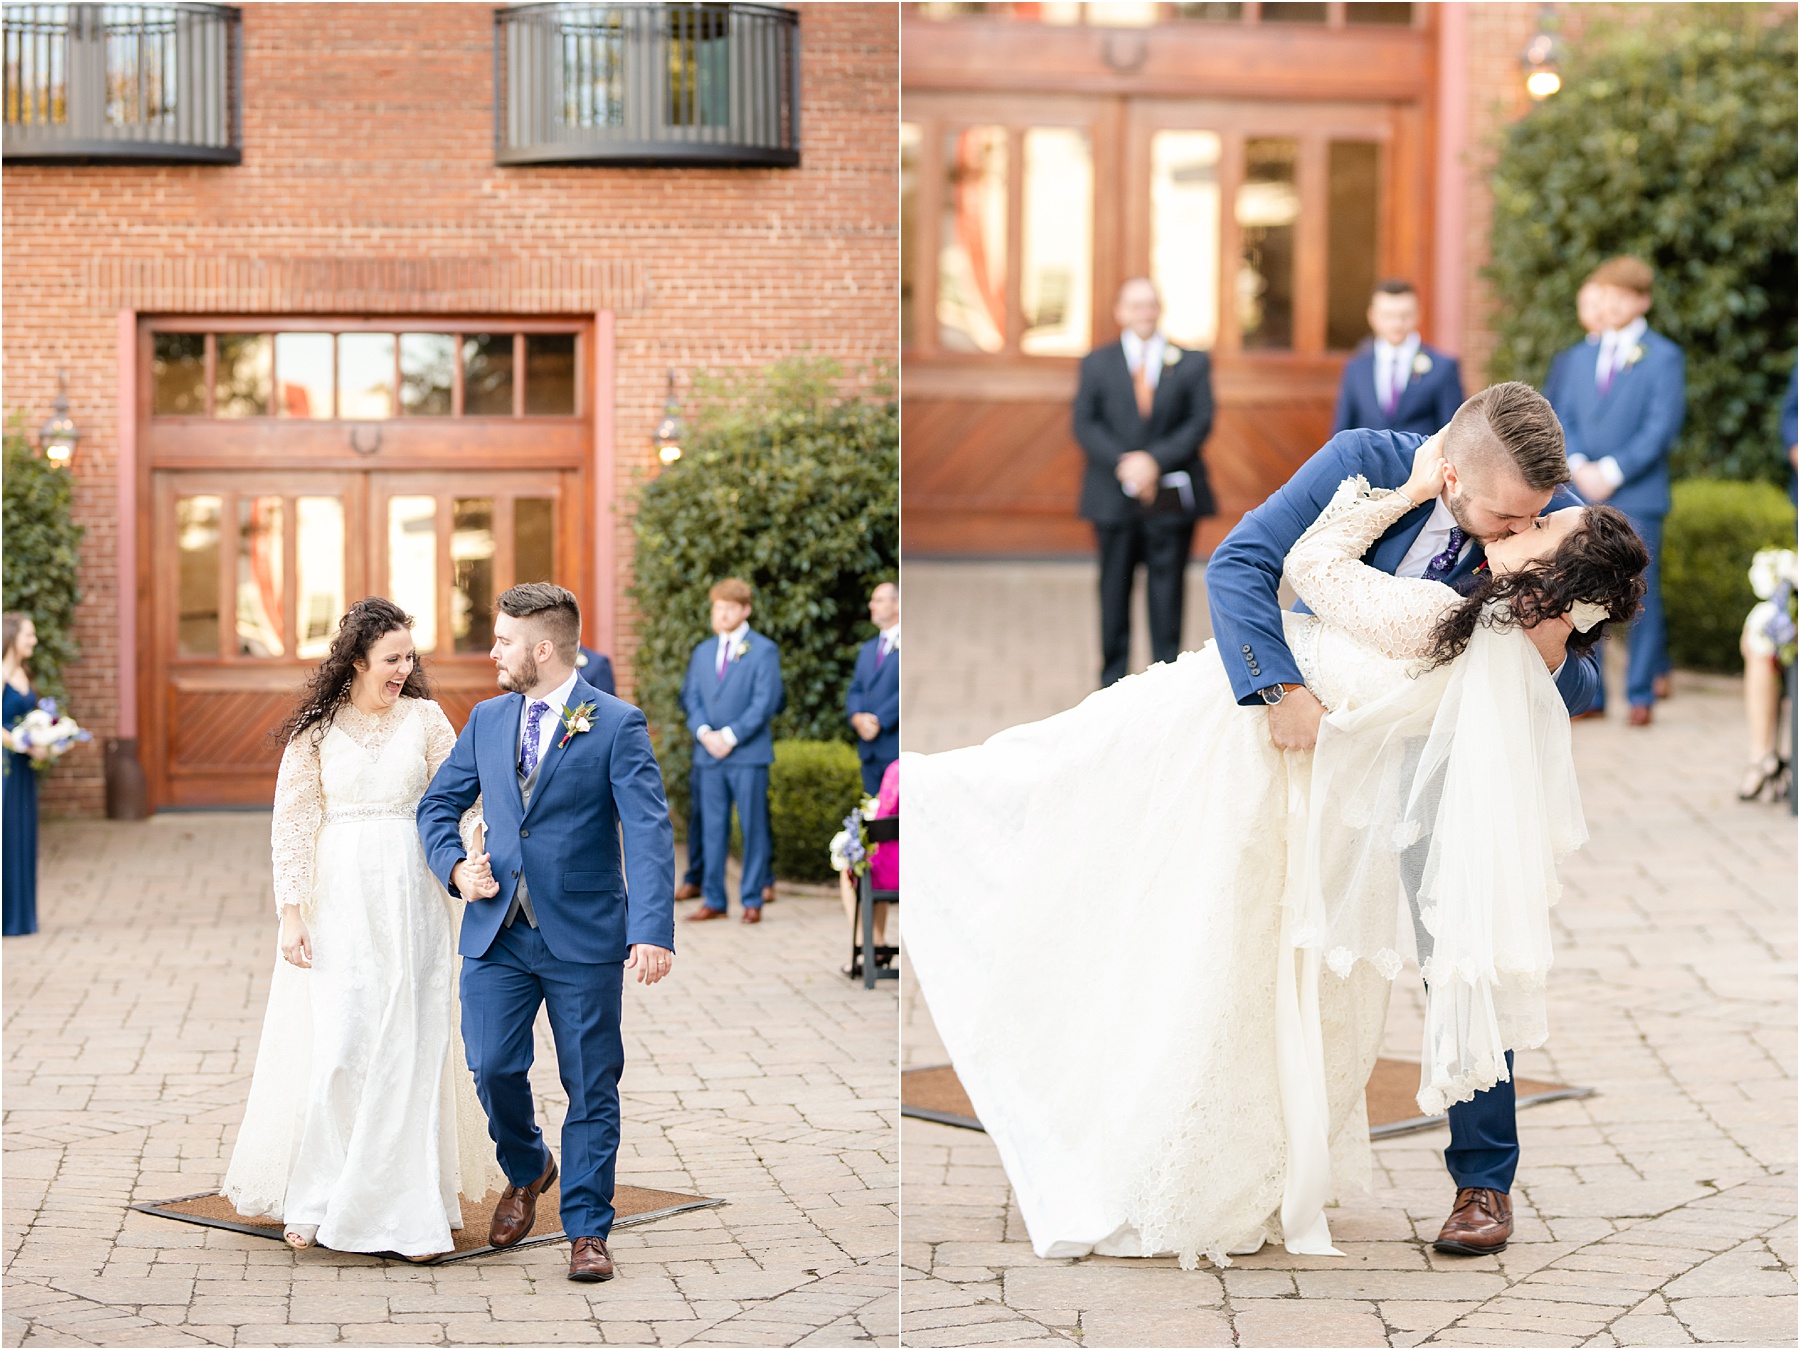 Groom dips bride after getting married